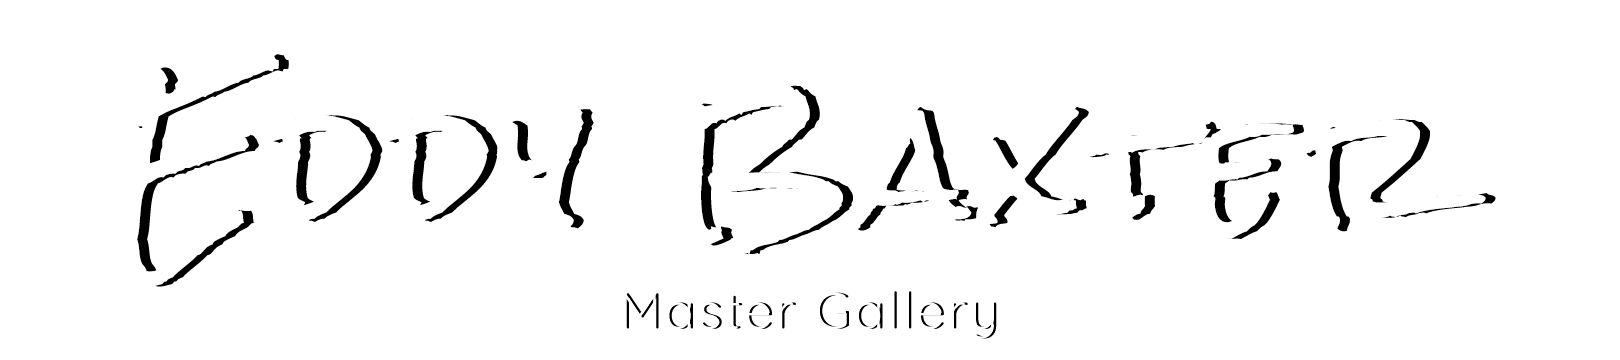 Eddy Baxter Master Gallery